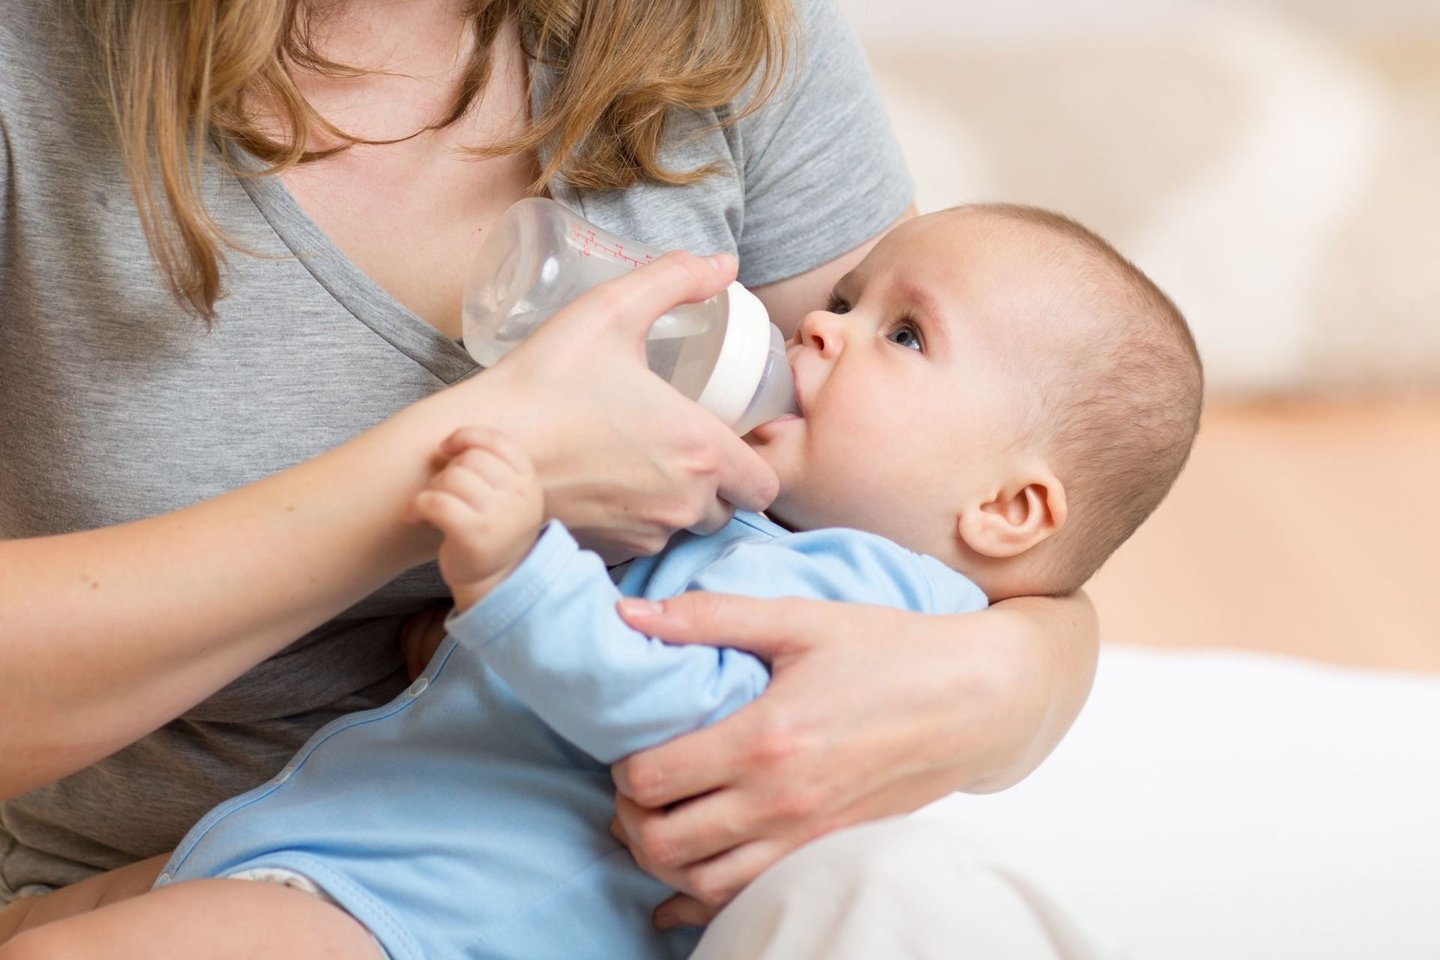  Maitinti kūdikį tik krūtimi nuo pat gimimo nėra taip paprasta, ypatingai jei vaikelis yra pirmas šeimoje.<br> 123rf.com nuotr.